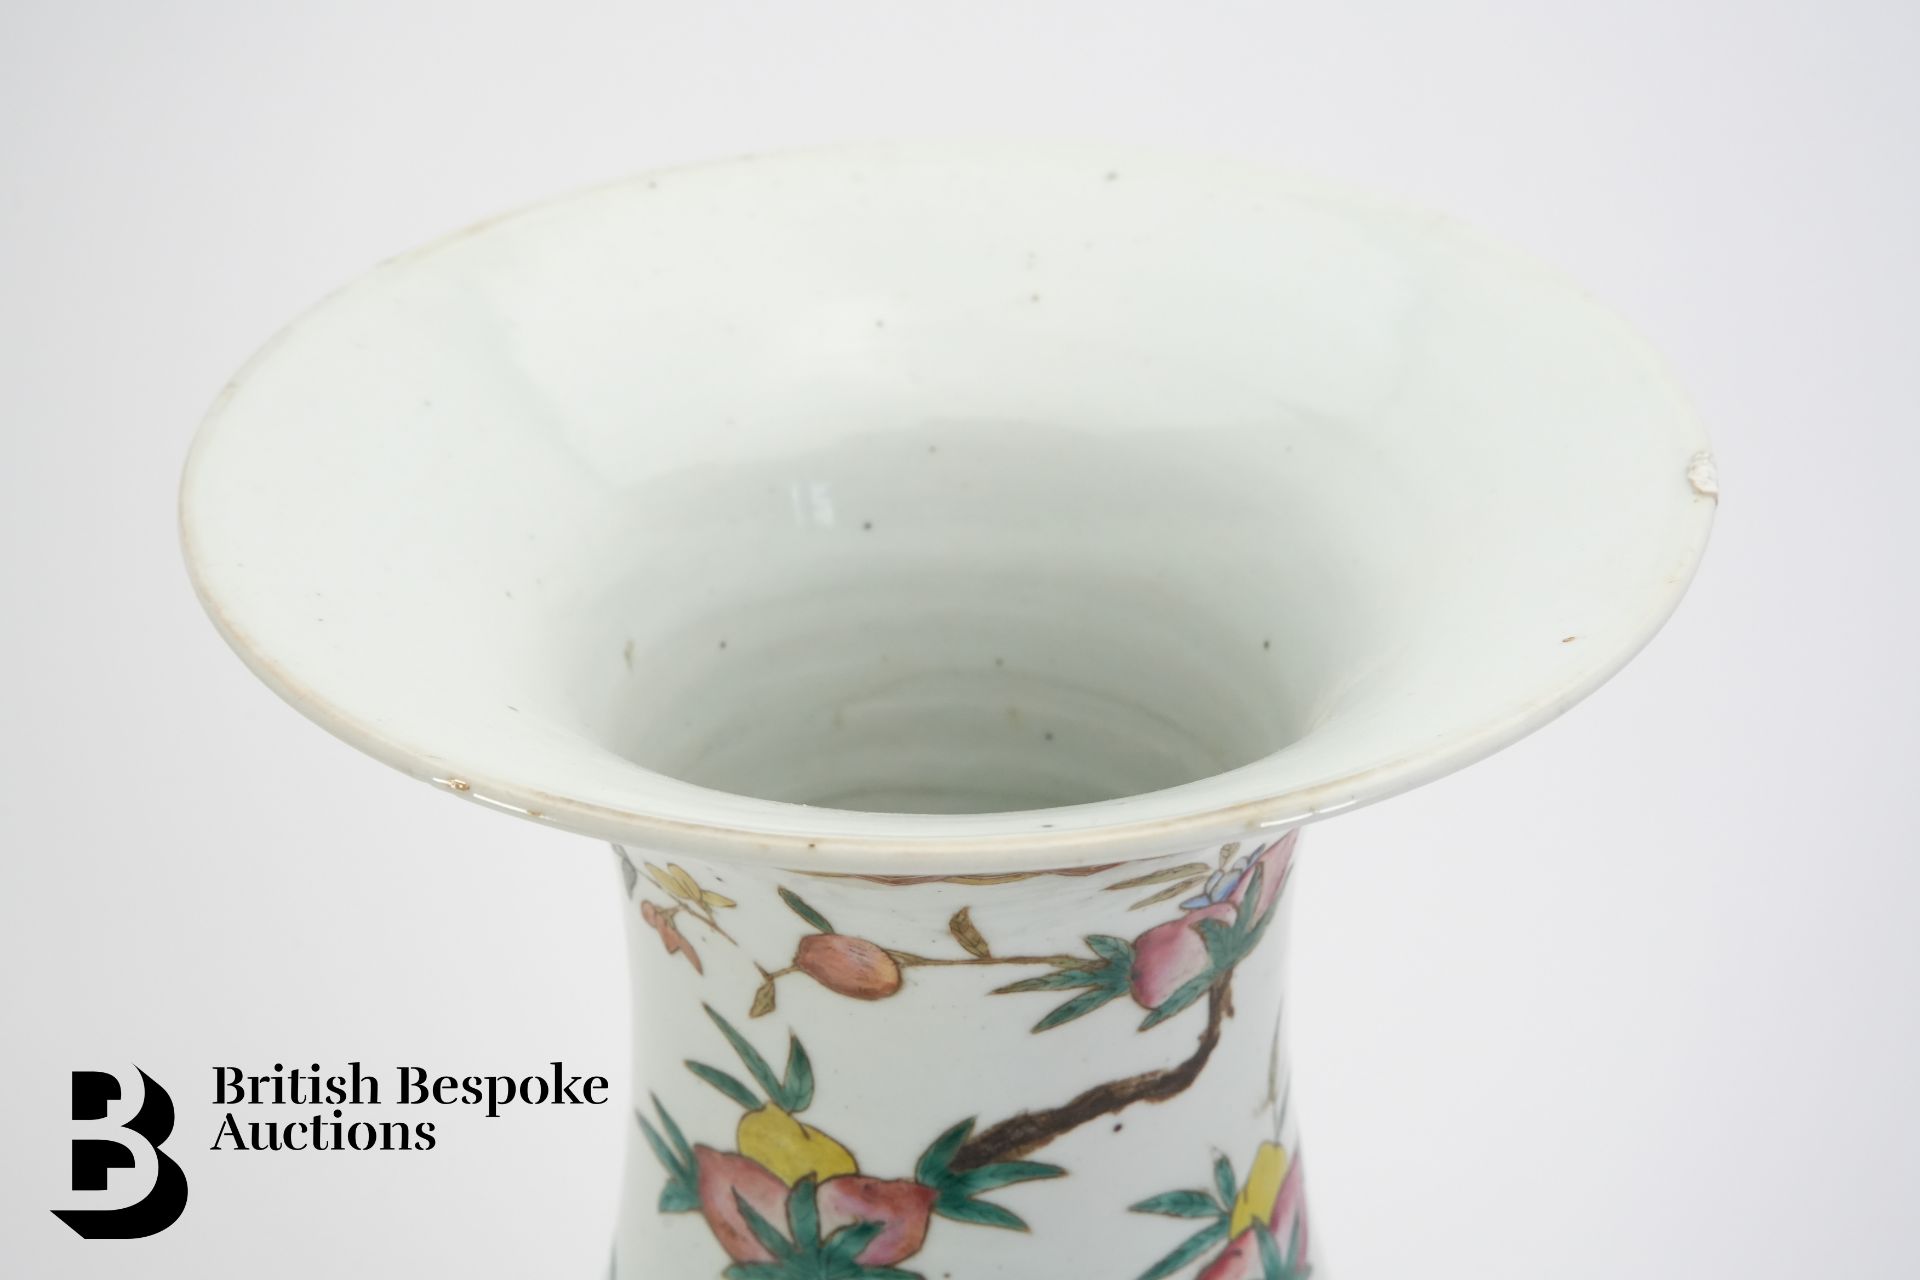 Chinese Qing Dynasty Porcelain Vase - Image 6 of 6